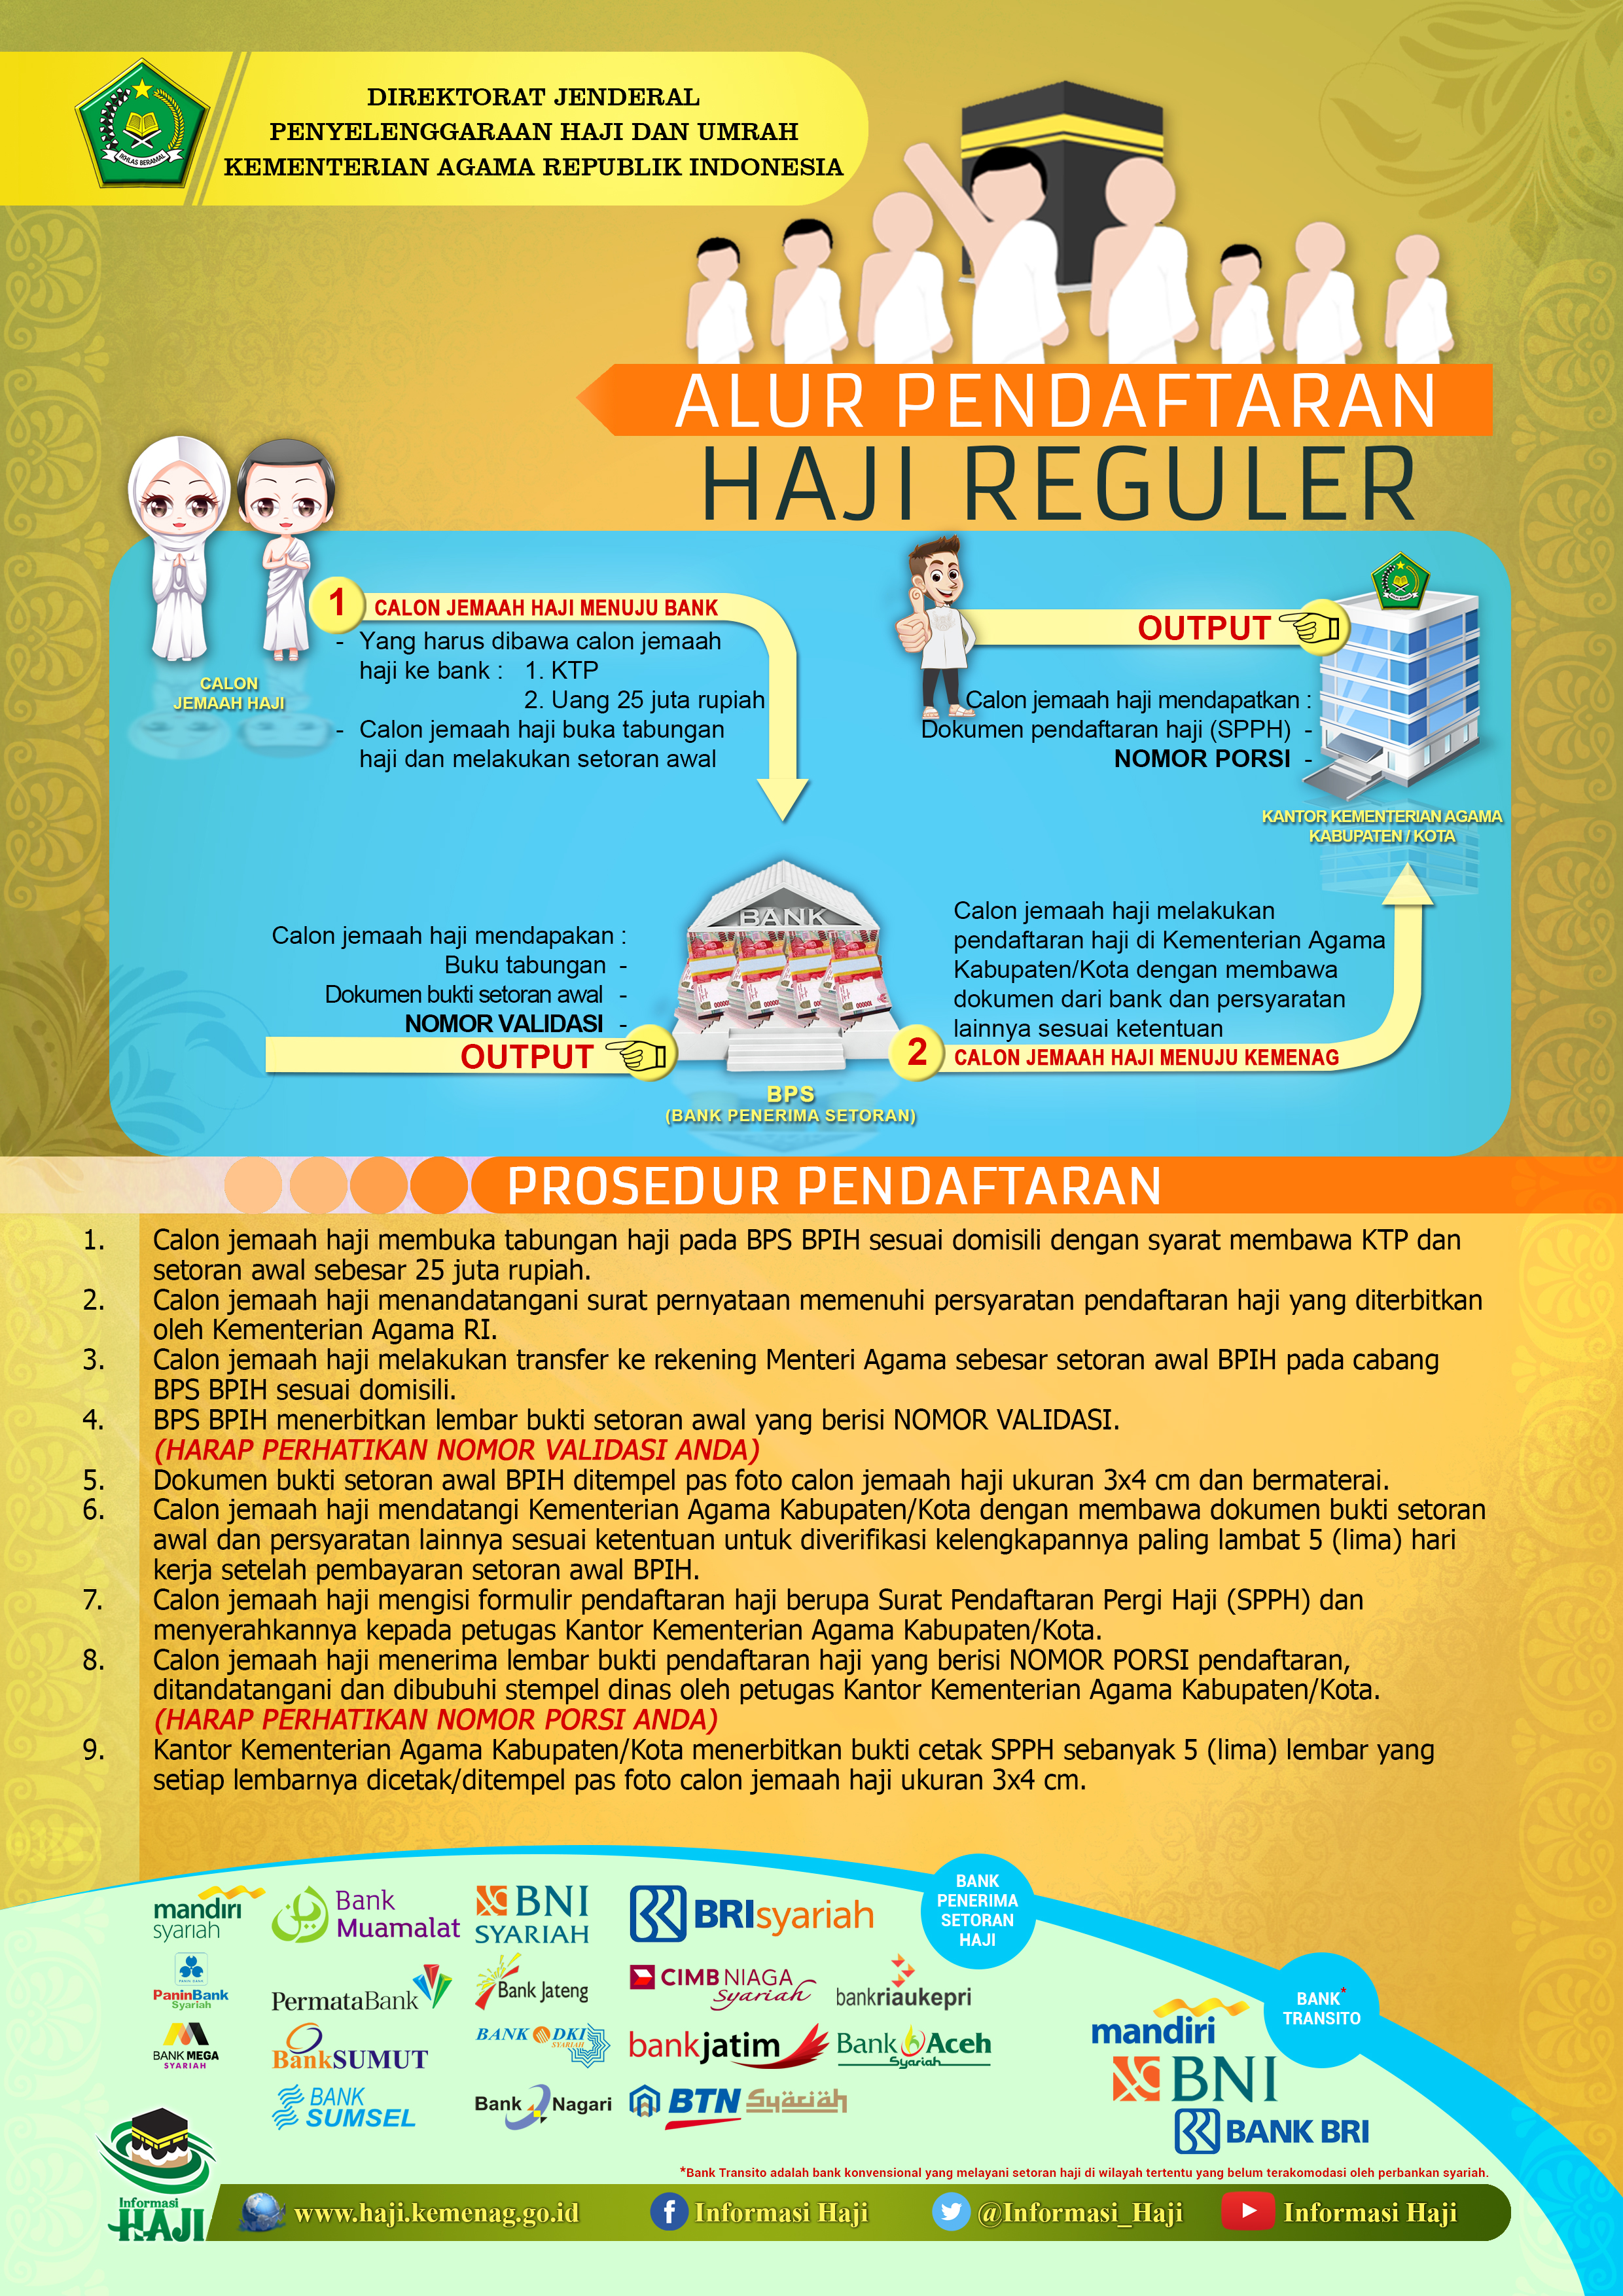 Alur Pendaftaran Haji Reguler 2017